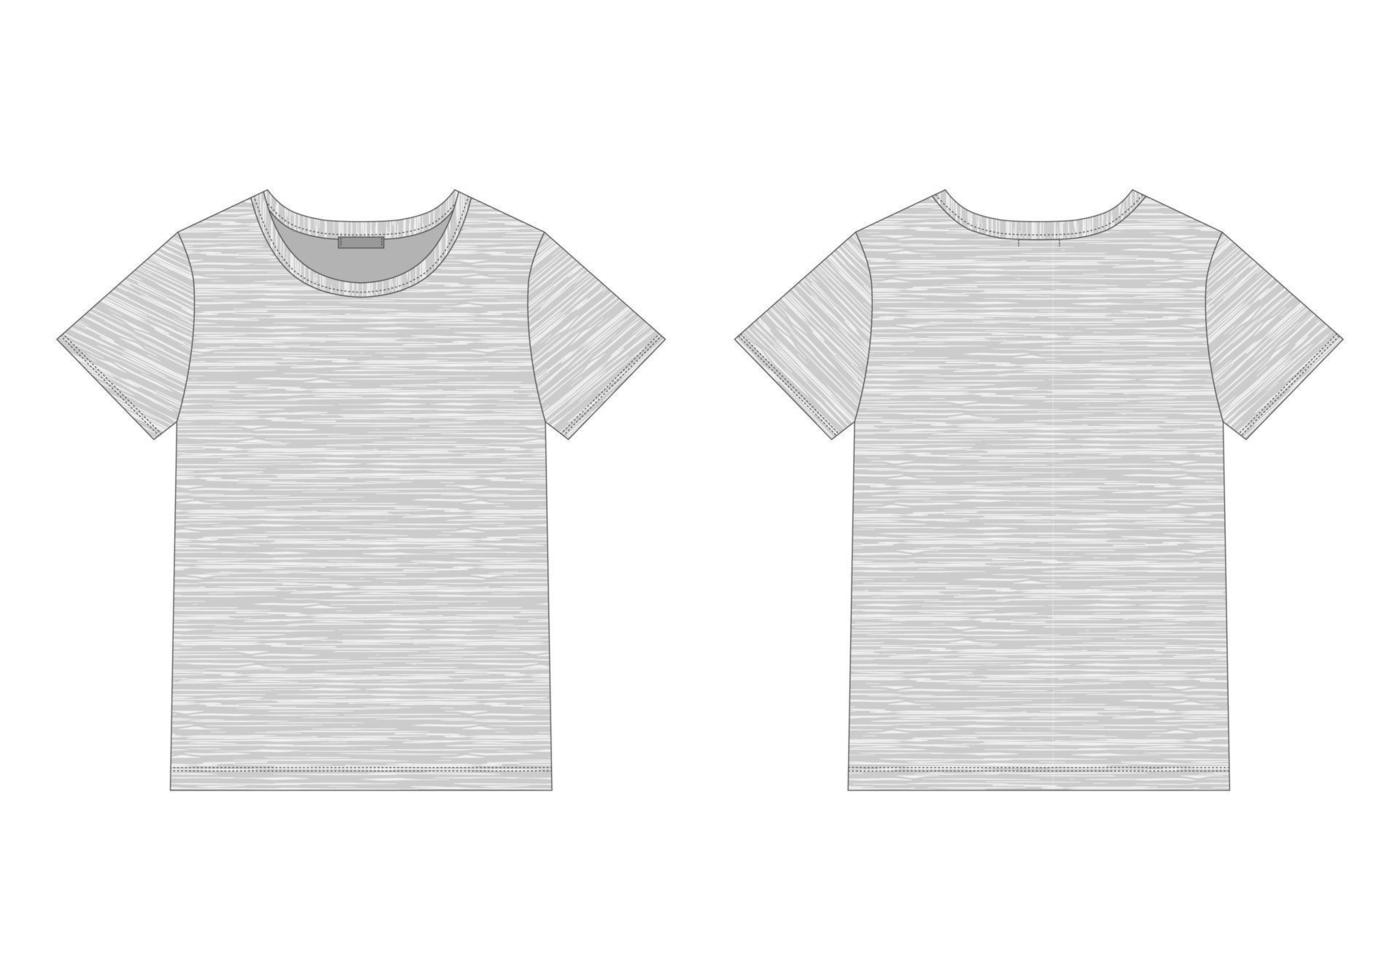 croquis technique t-shirt femme en tissu gris chiné. vecteur